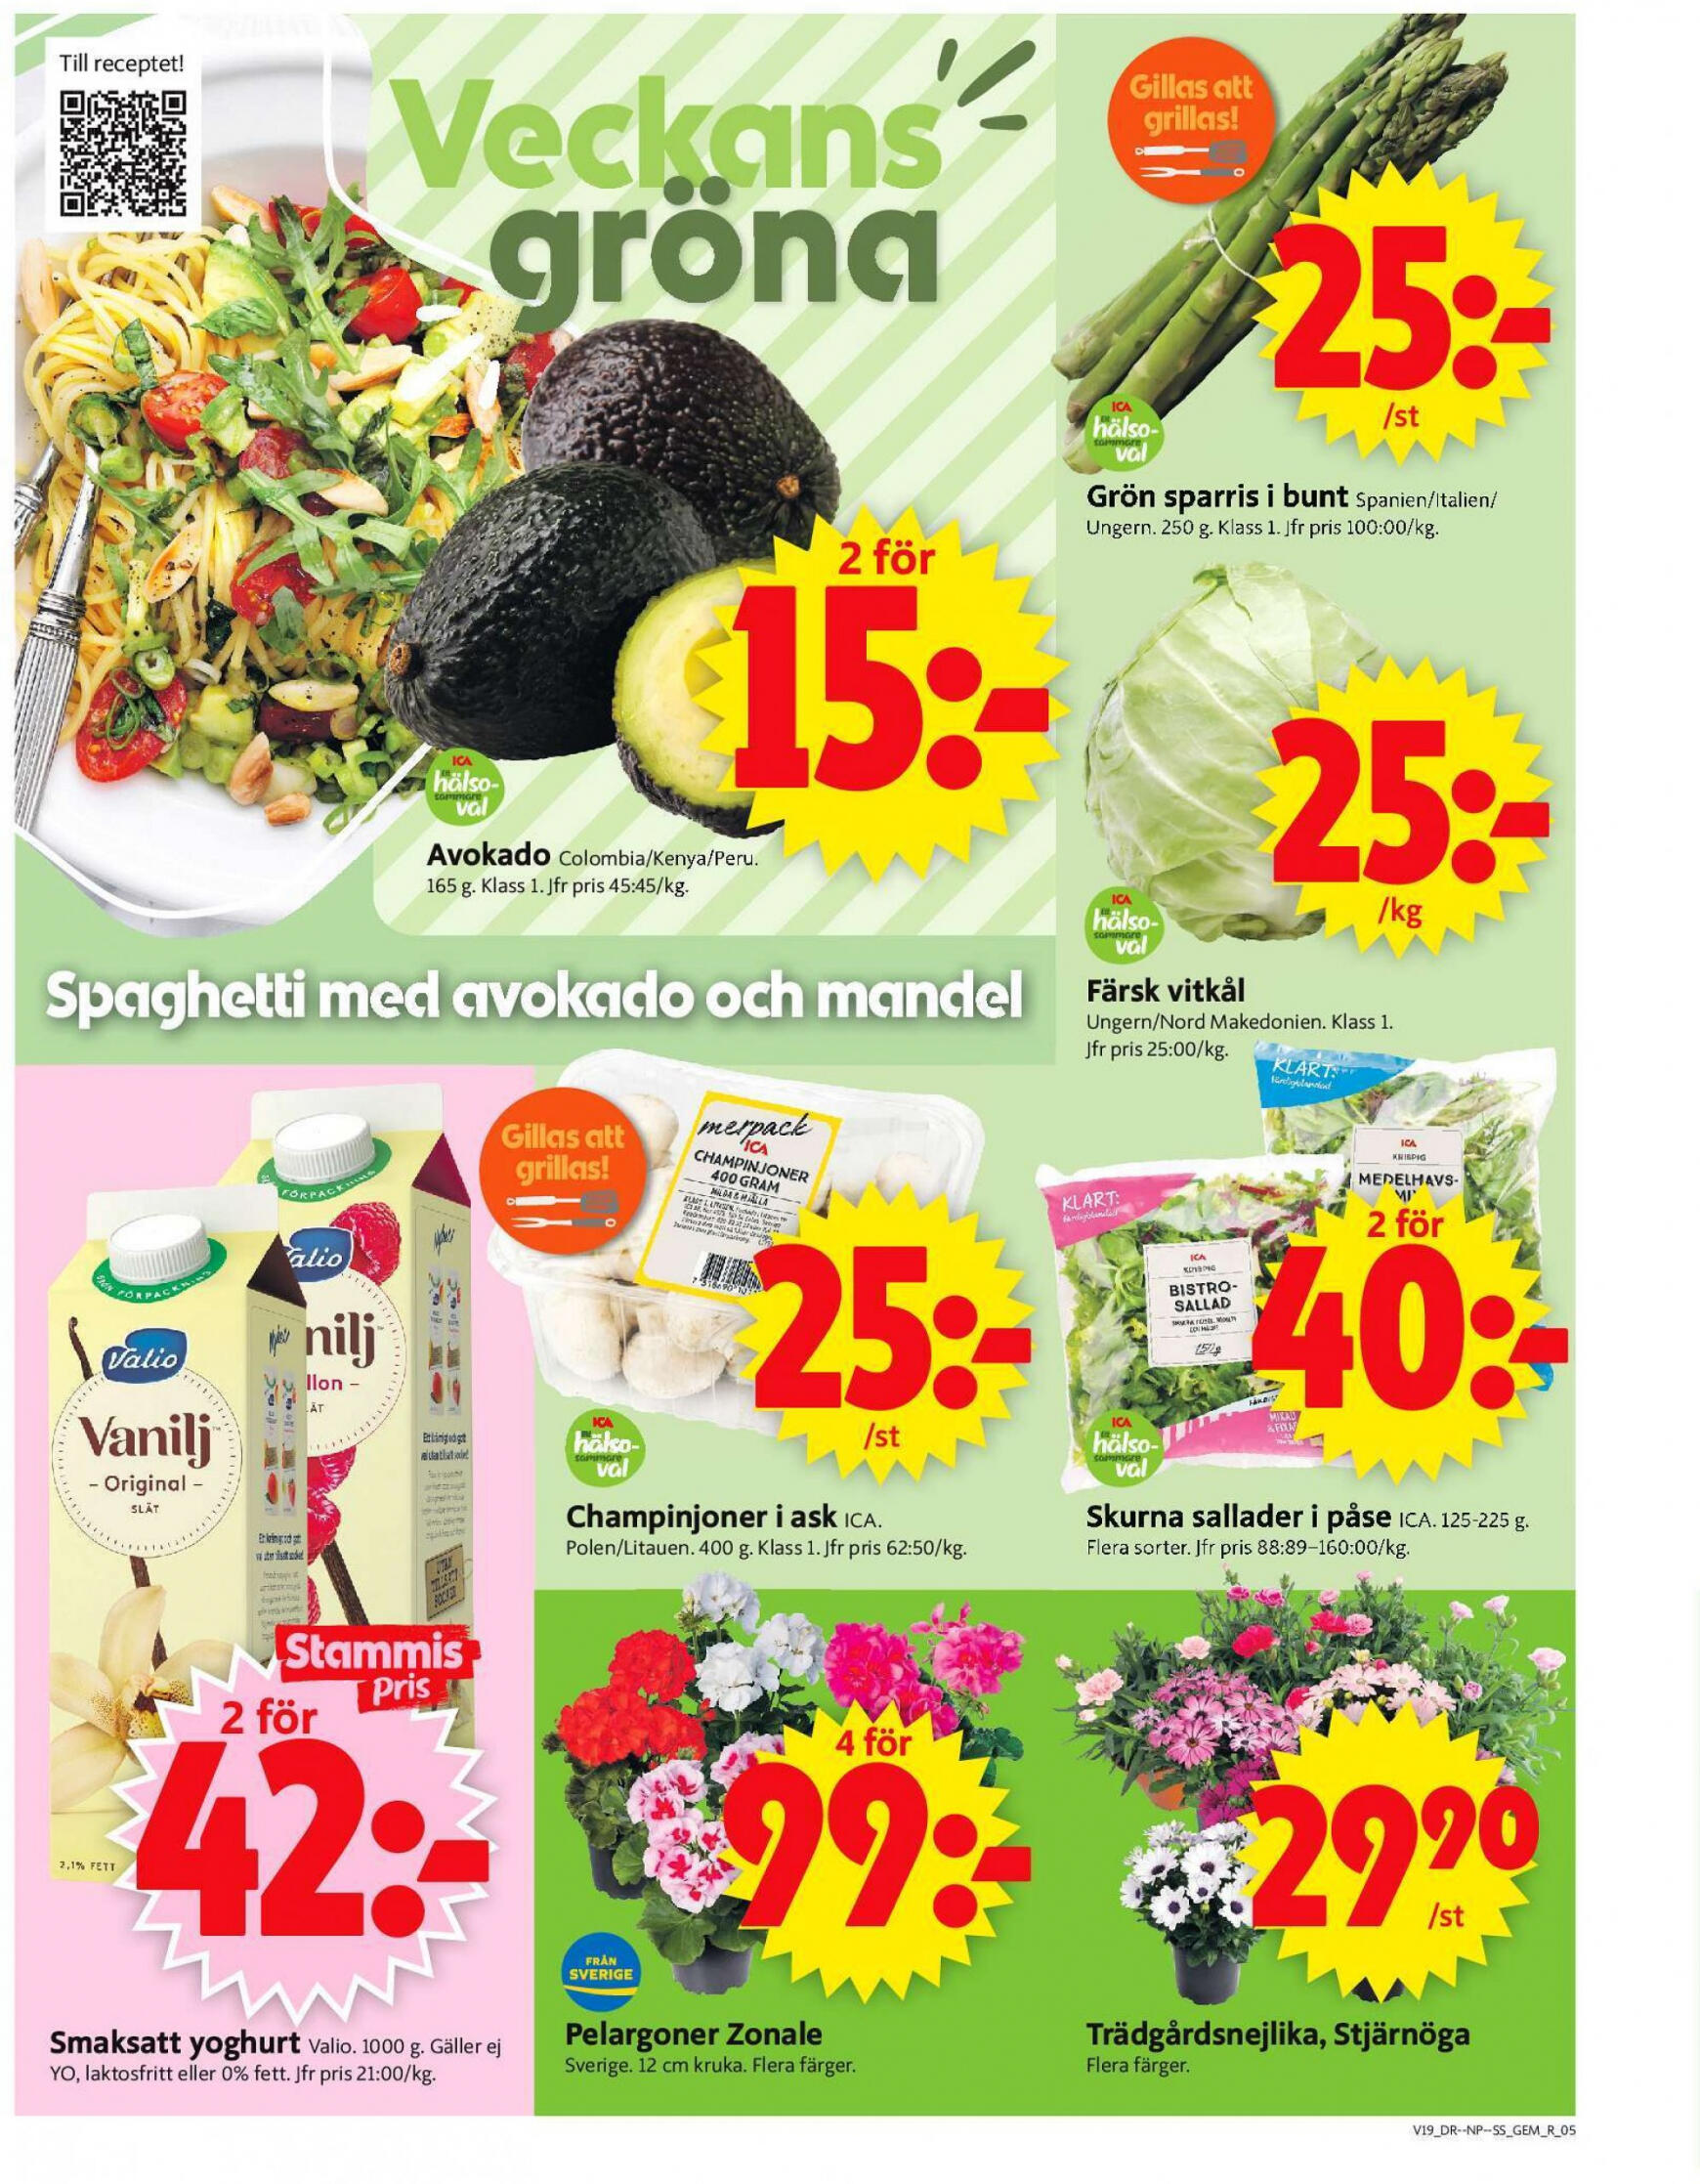 ica-supermarket - Flyer ICA Supermarket current 06.05. - 12.05. - page: 5